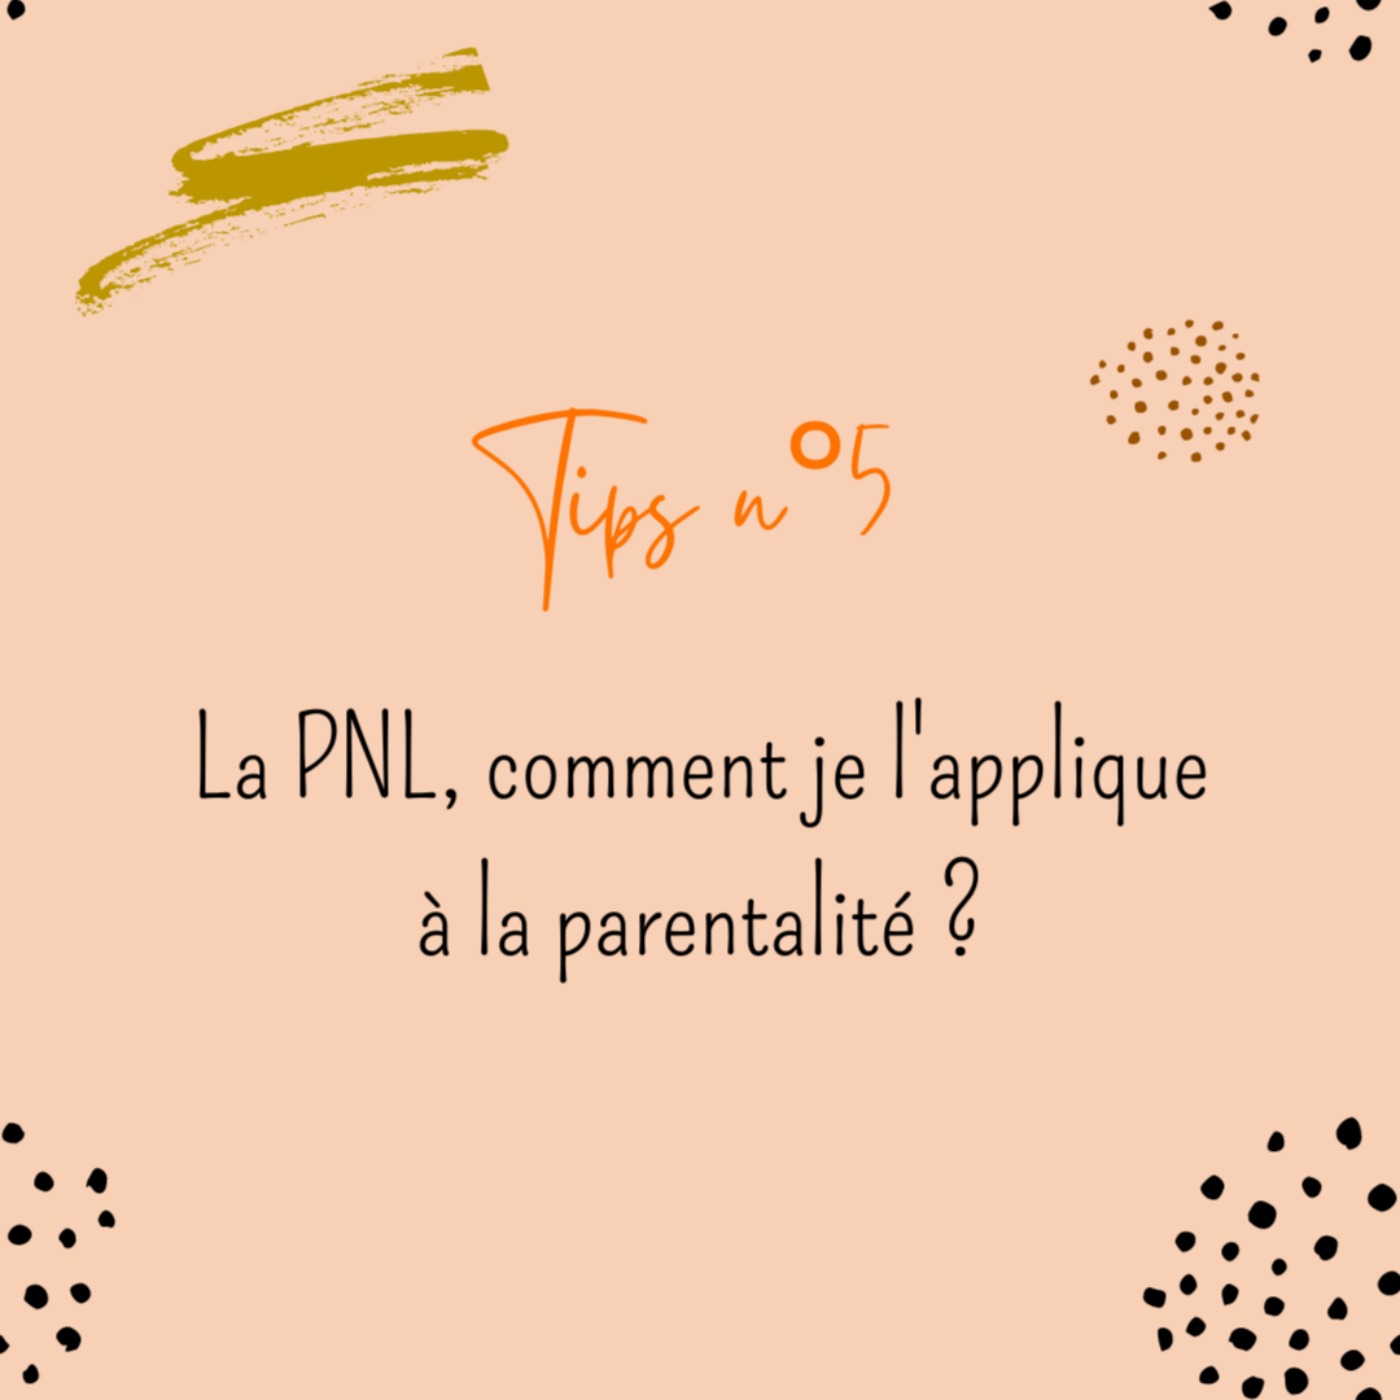 Tips n°5 : la PNL, comment je l'applique à la parentalité